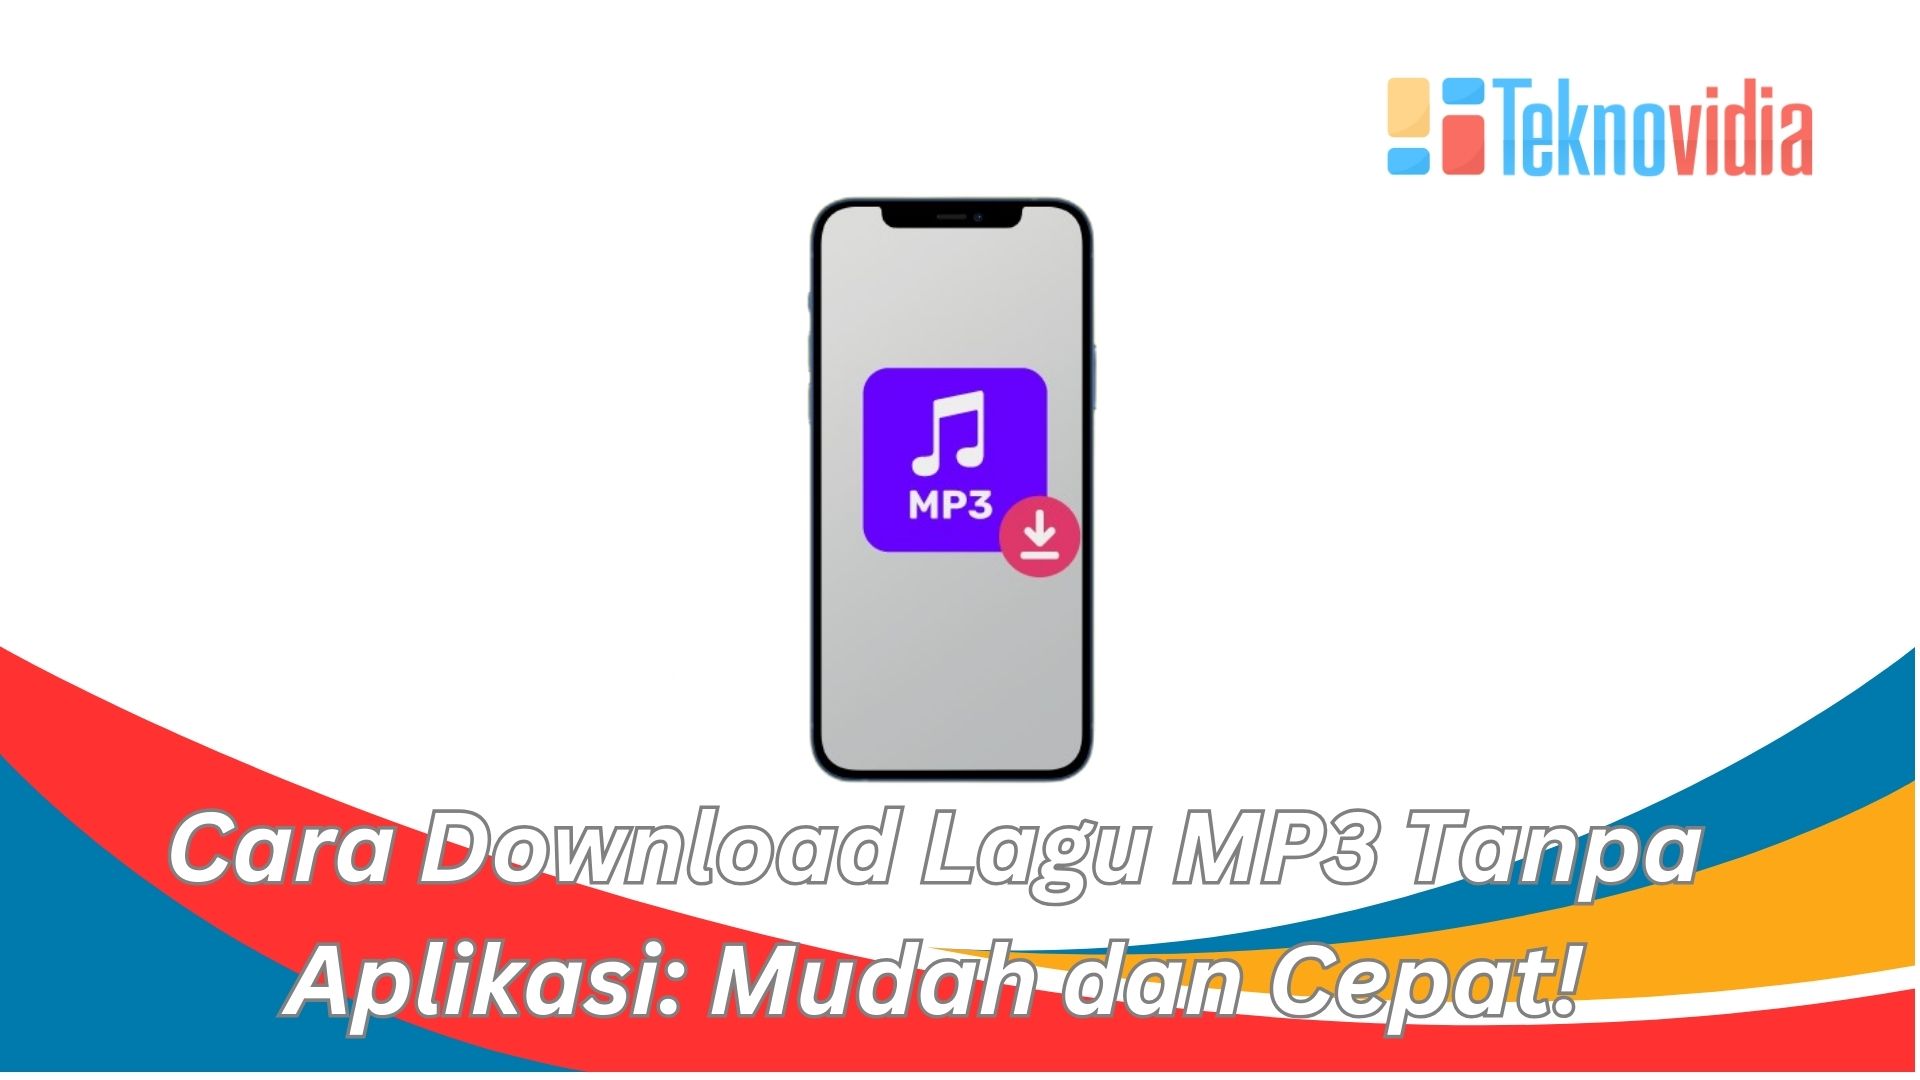 Cara Download Lagu MP3 Tanpa Aplikasi: Mudah dan Cepat!